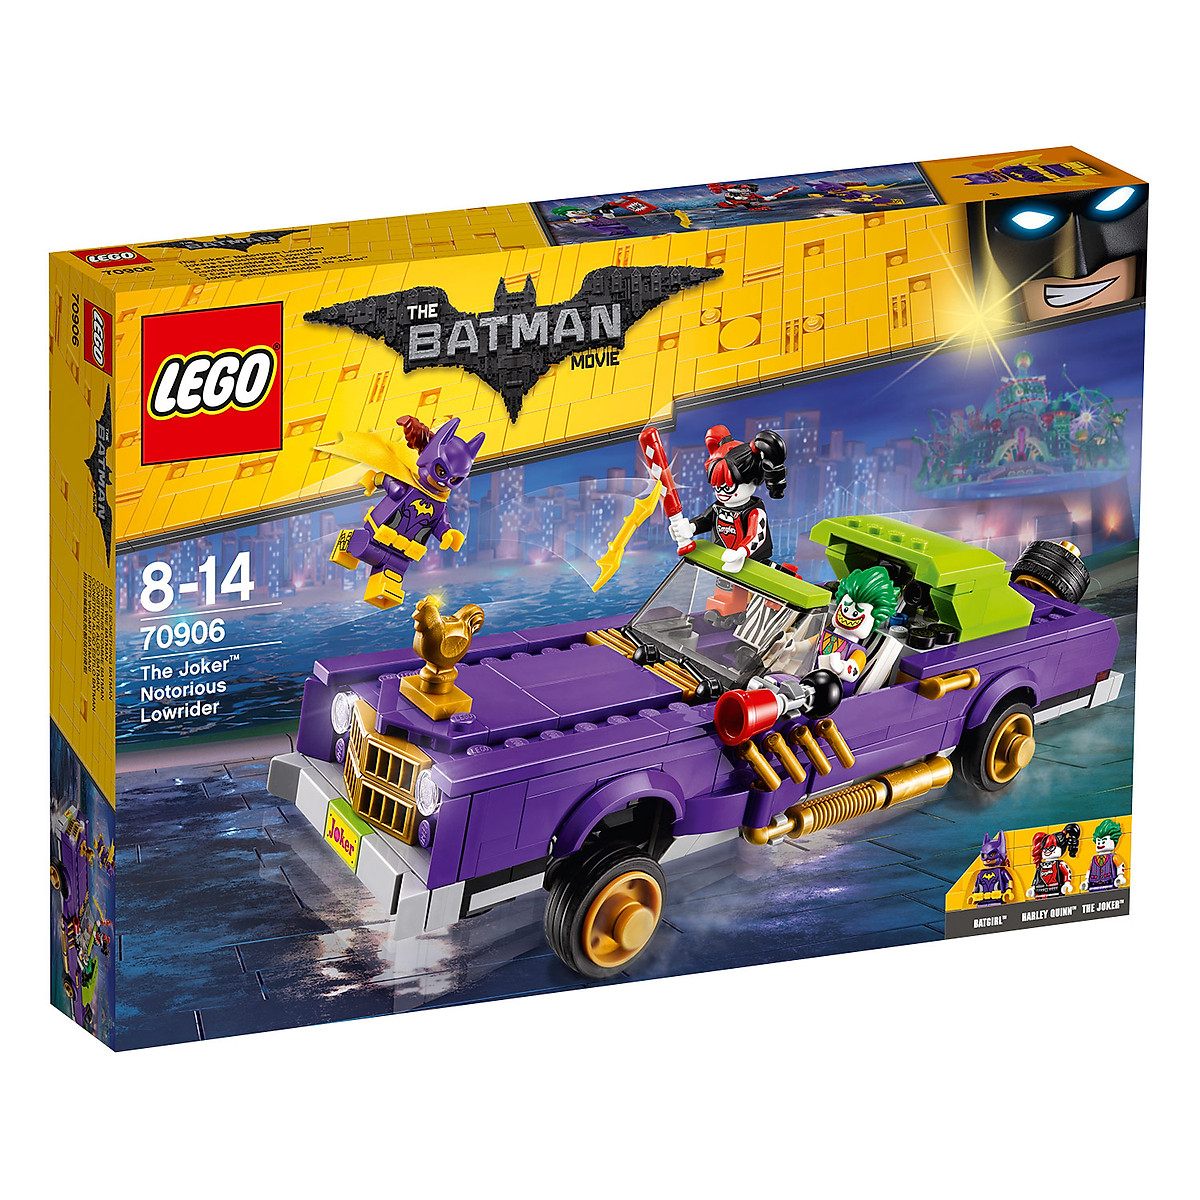 Mua Mô Hình LEGO Batman Movie - Xế Độ Của Joker 70906 (433 Mảnh Ghép)